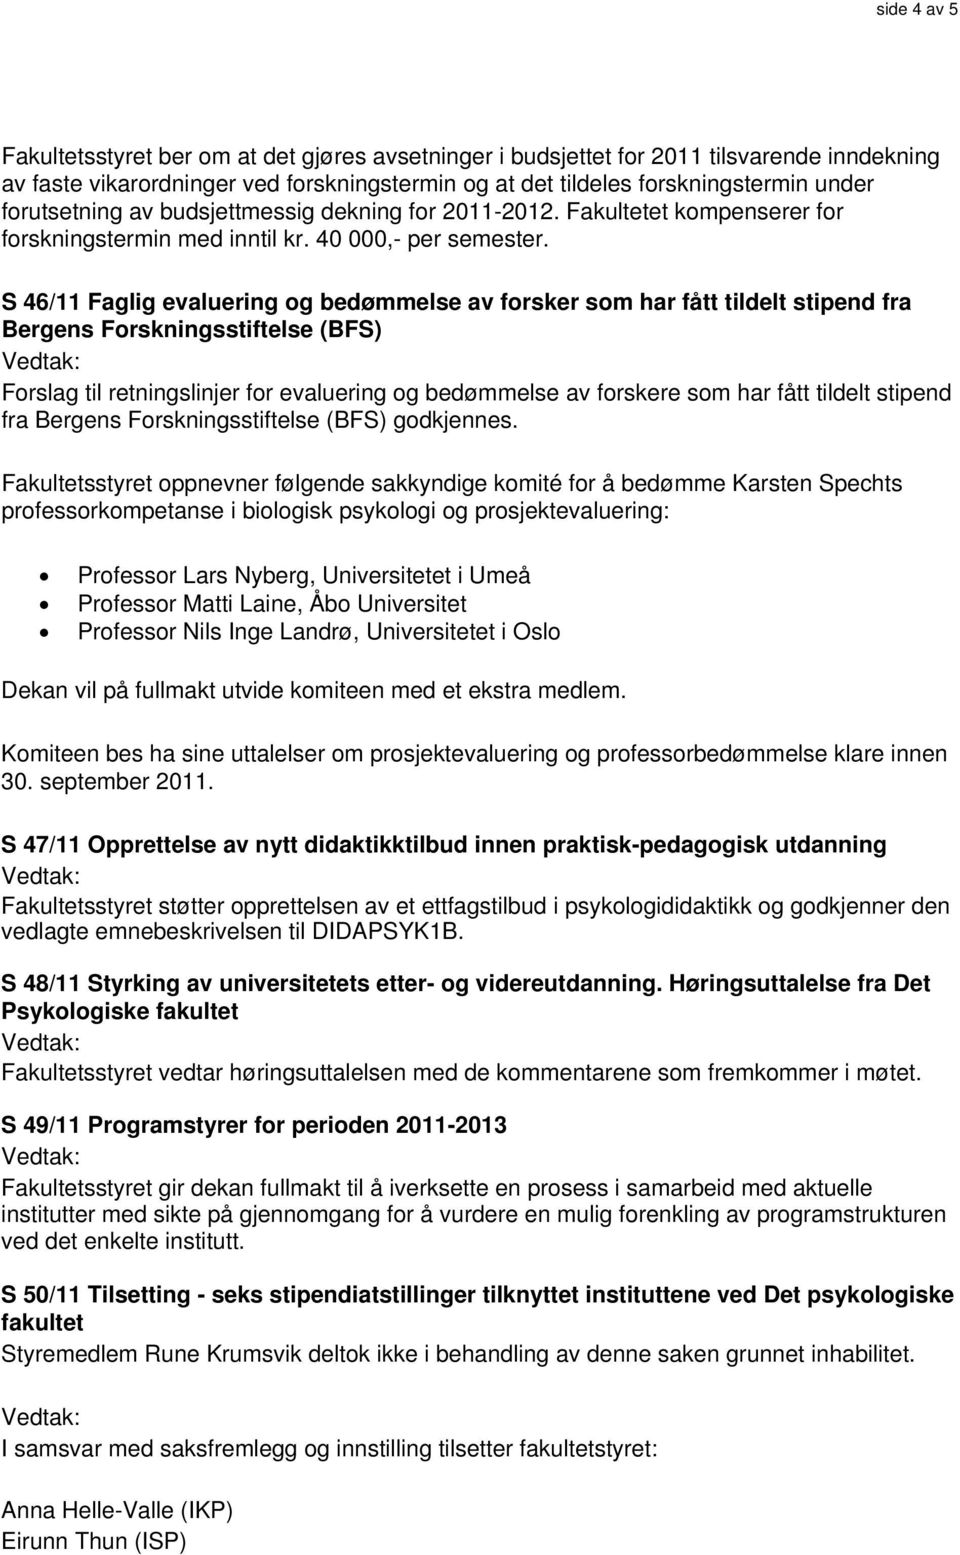 S 46/11 Faglig evaluering og bedømmelse av forsker som har fått tildelt stipend fra Bergens Forskningsstiftelse (BFS) Forslag til retningslinjer for evaluering og bedømmelse av forskere som har fått